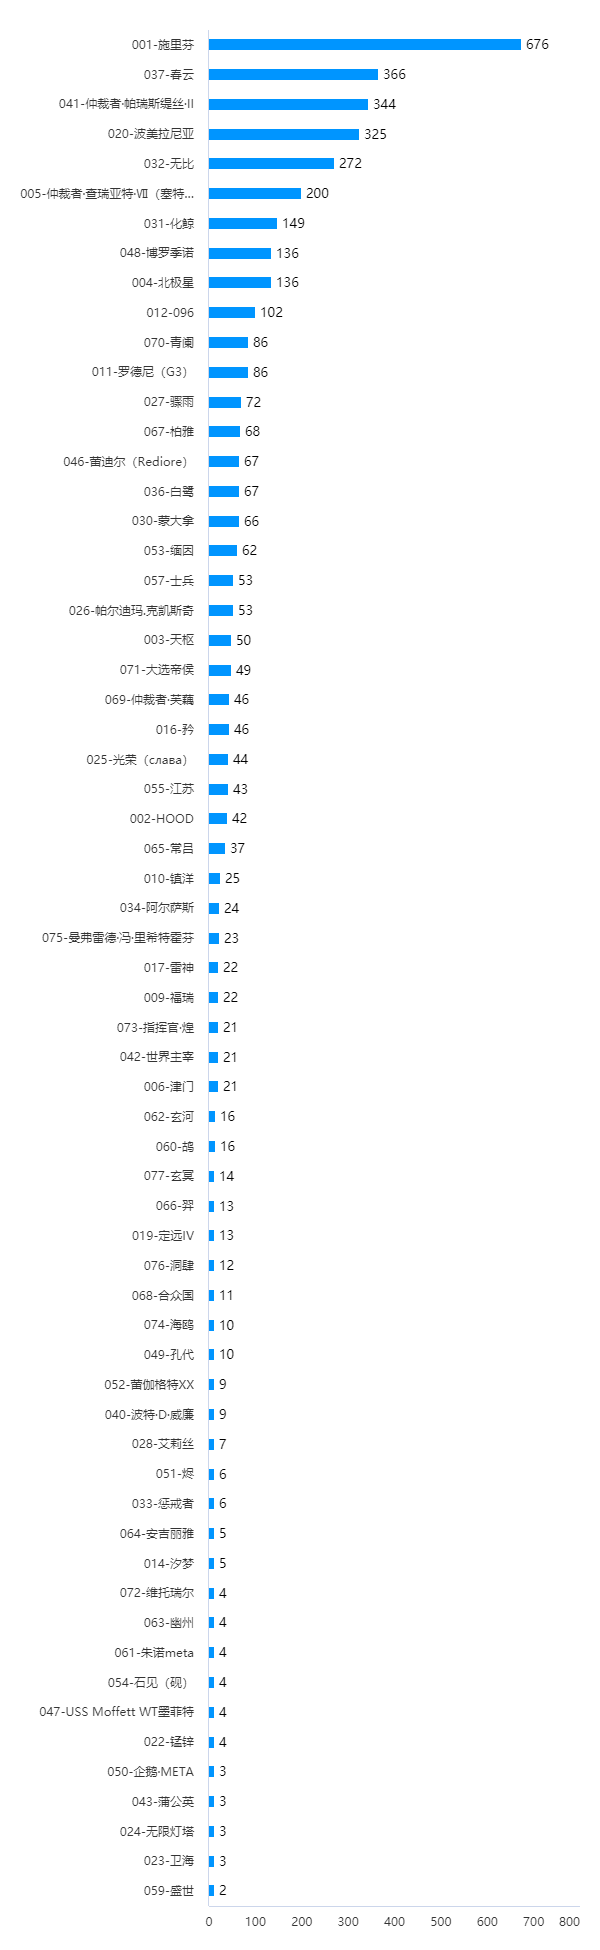 碧蓝航线五周年WIKI同人角色创作大赛投票结果图.png